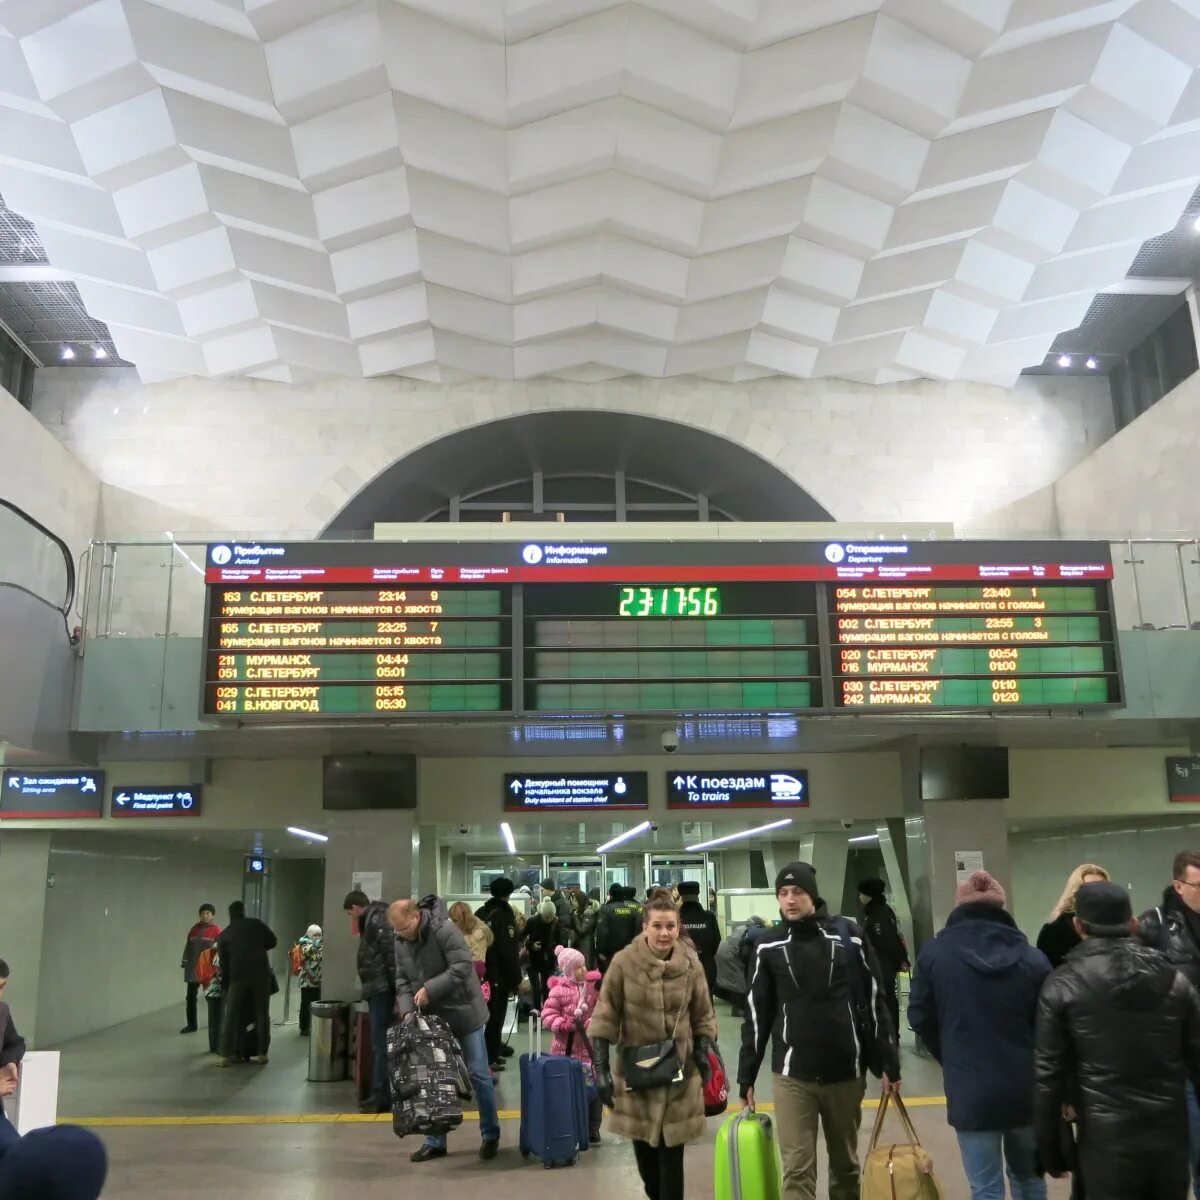 Обсуждение поезда. Вокзал внутри. Московский вокзал СПБ внутри. Станция вокзала внутри. Казань Центральный вокзал внутри.